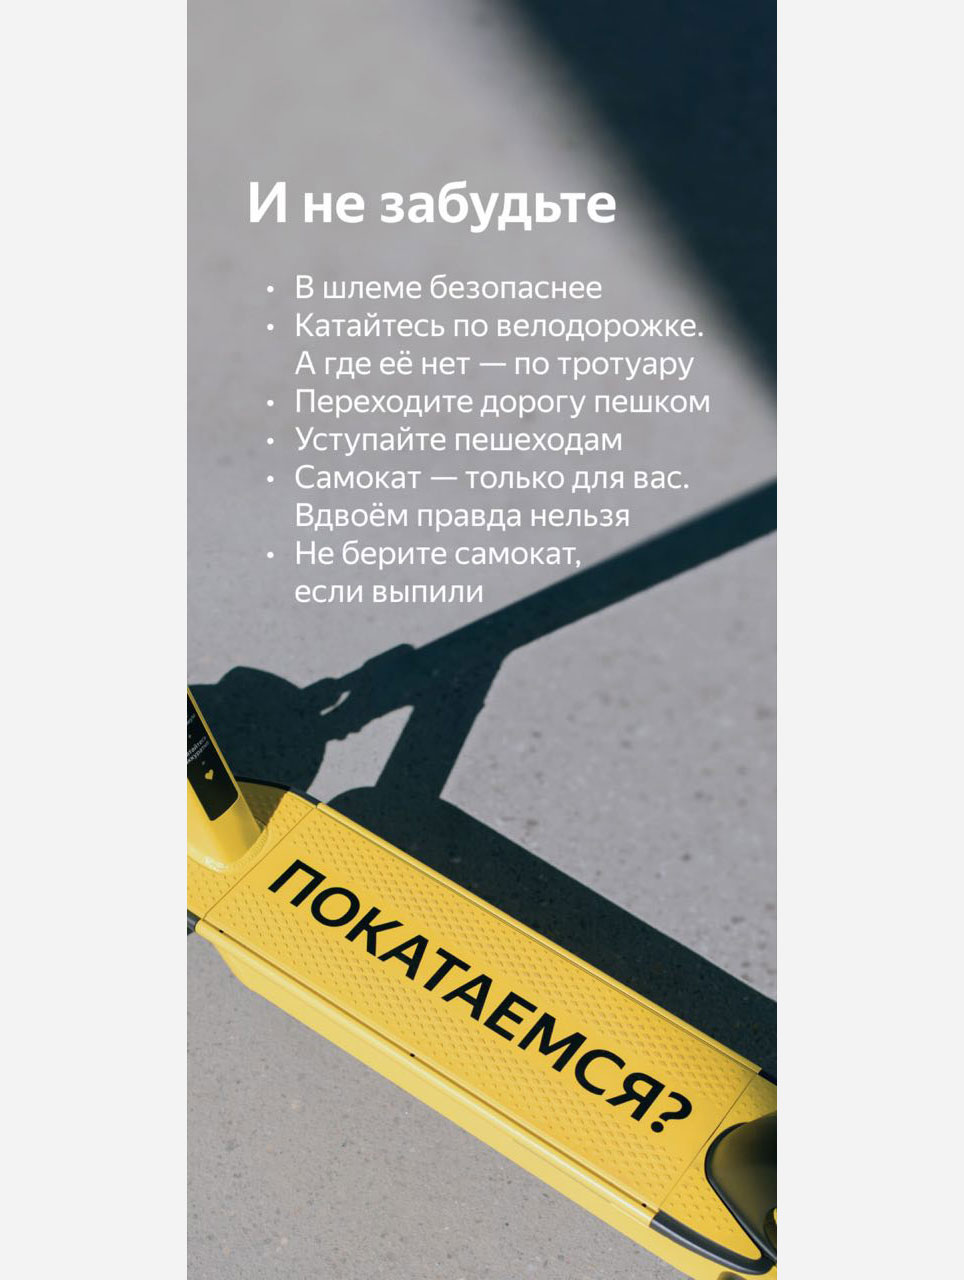 Правила использования самокатов в приложении Яндекс Go 
